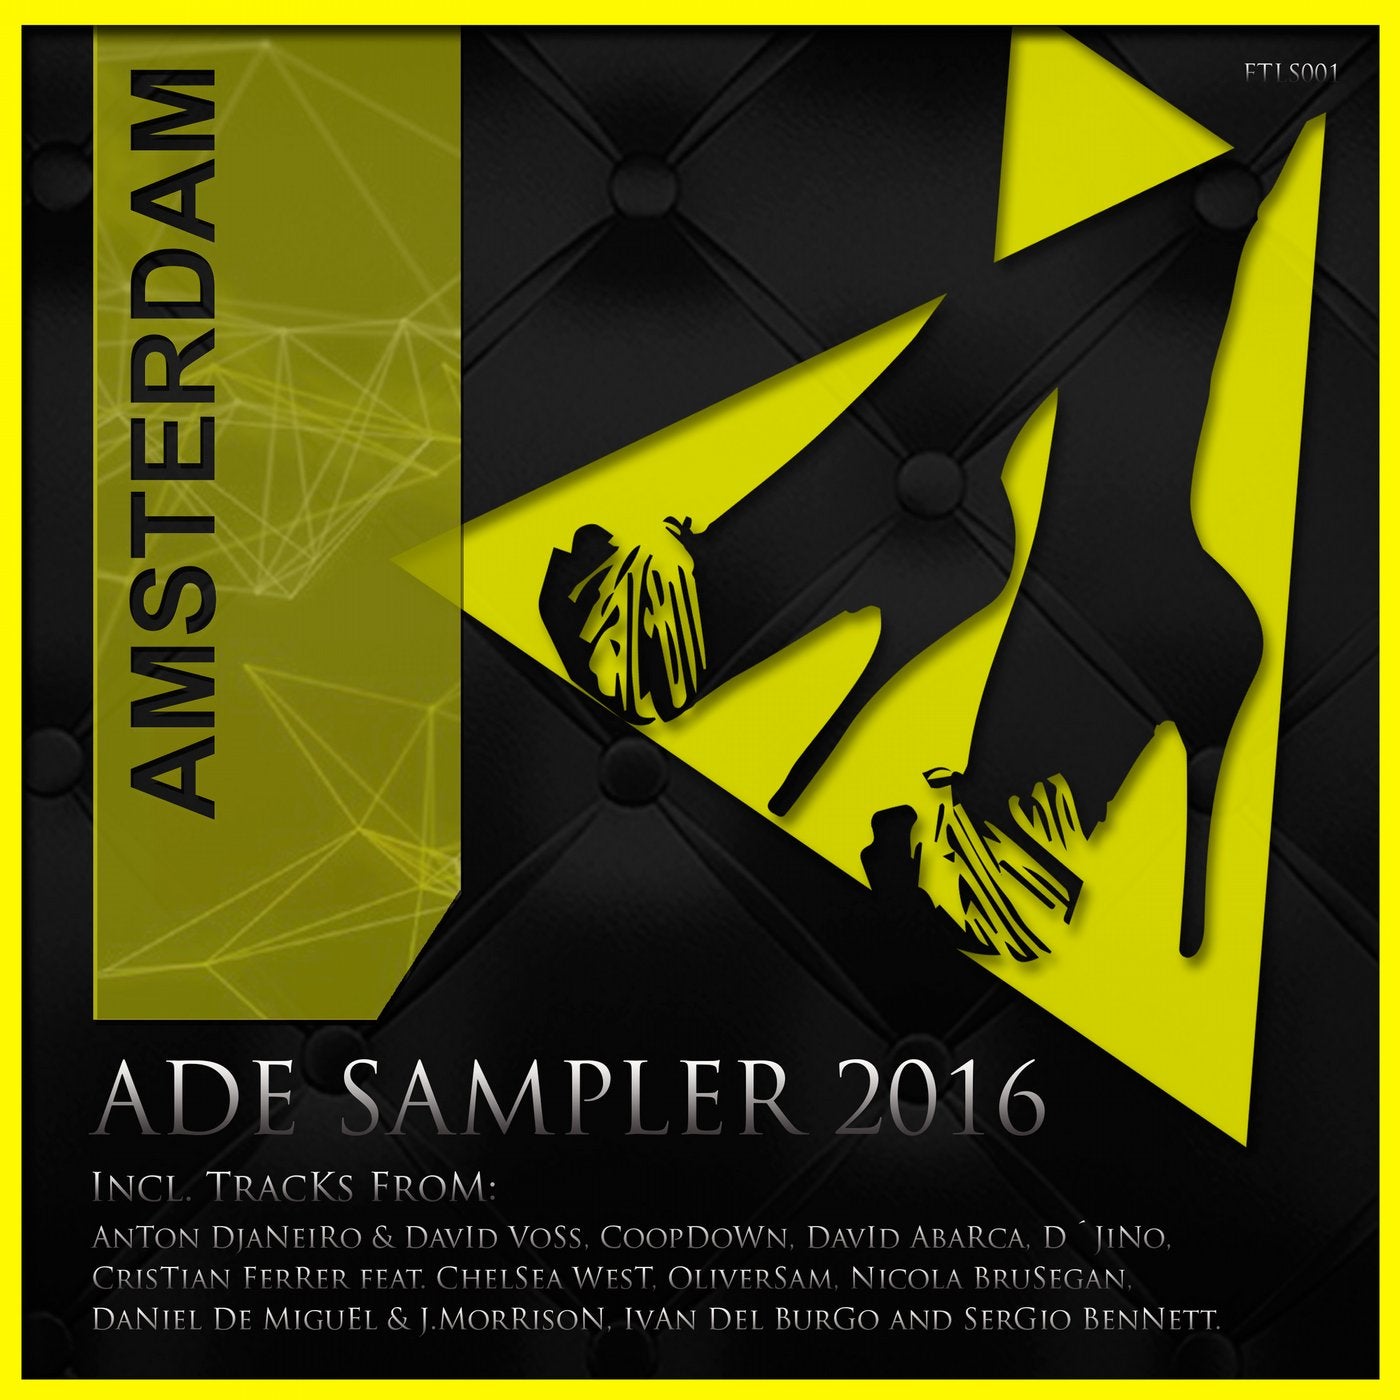 ADE Sampler 2016